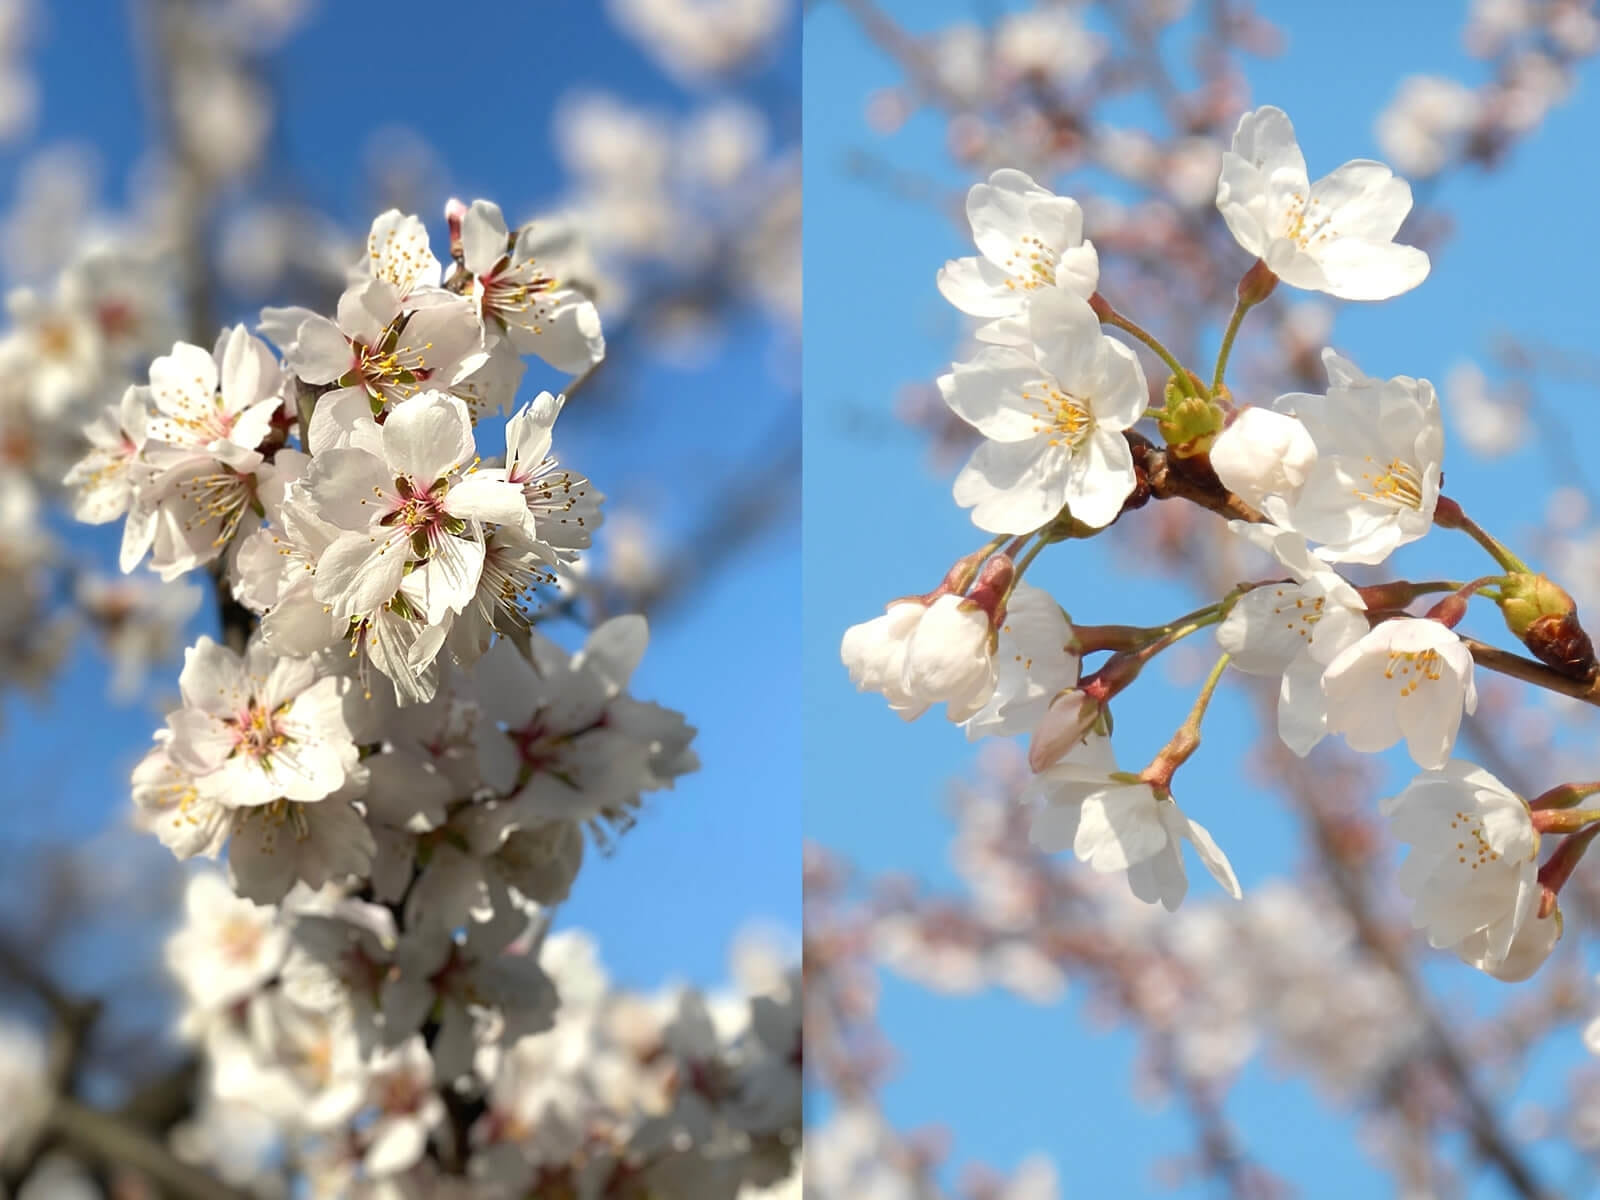 そっくりな花「アーモンド」と「桜」の違いや簡単な見分け方とはそっくりな花「アーモンド」と「桜」の違いや簡単な見分け方とは